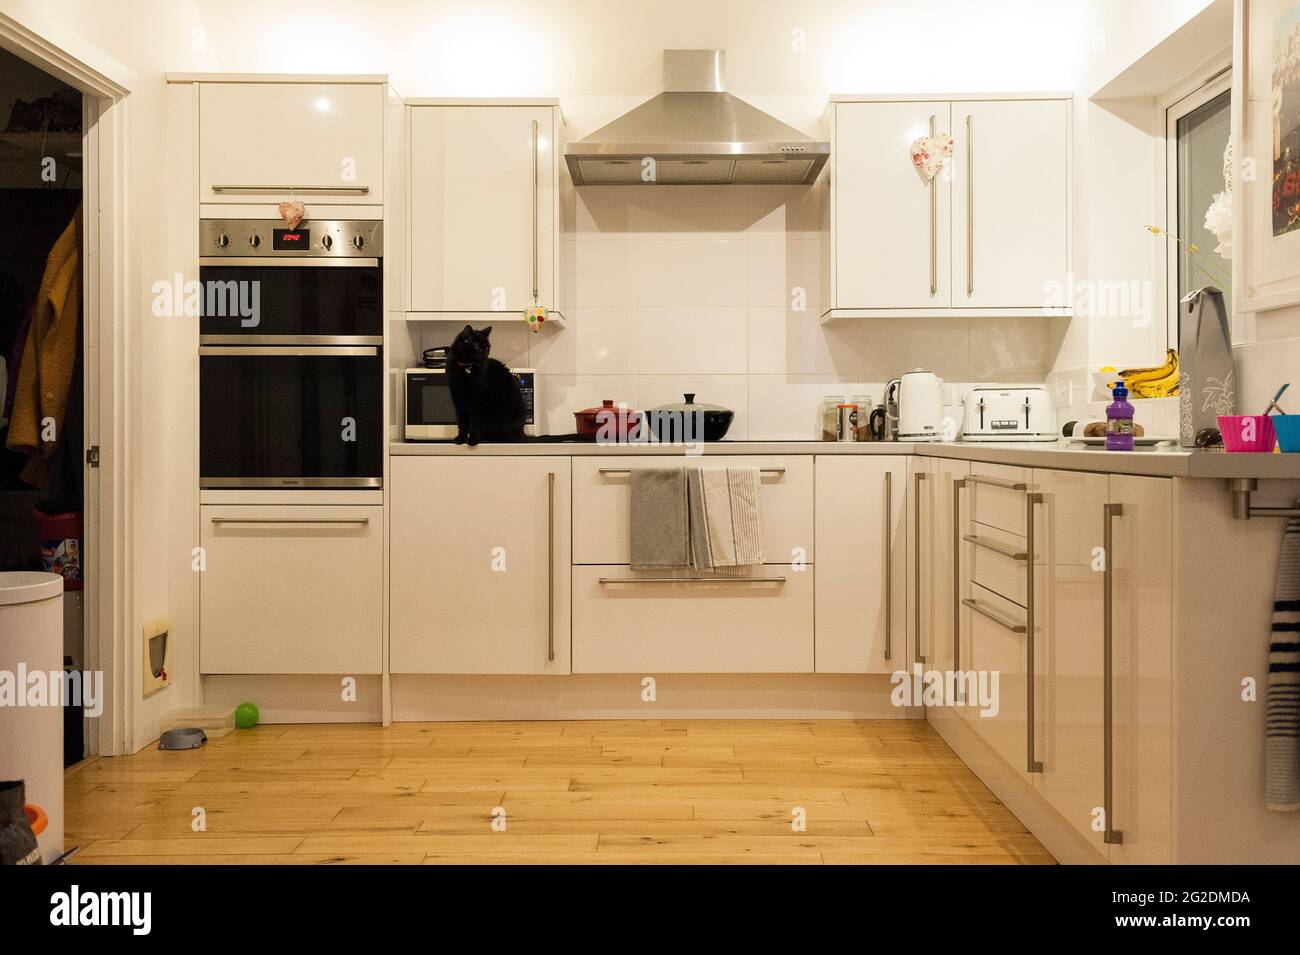 Innenaufnahmen einer echten Familienküche in einem authentischen, modernen Zuhause. Stockfoto